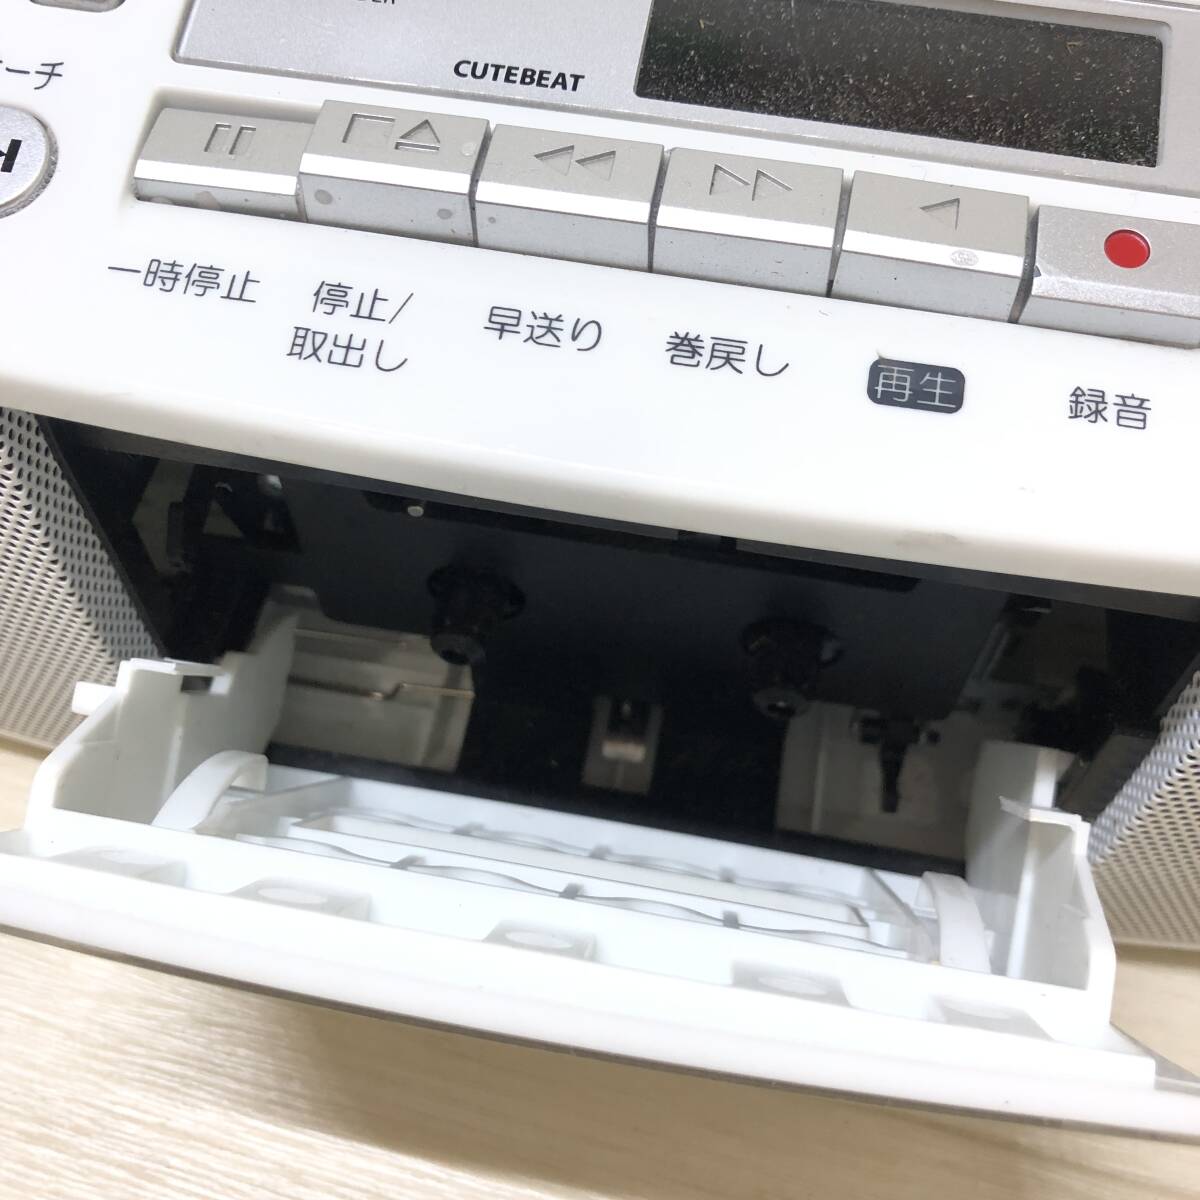 △ TOSHIBA 東芝 ラジオカセットレコーダー TY-CDH7 2019年製 本体のみ アダプタ無し オーディオ機器 動作確認済 中古品 △R73075の画像4